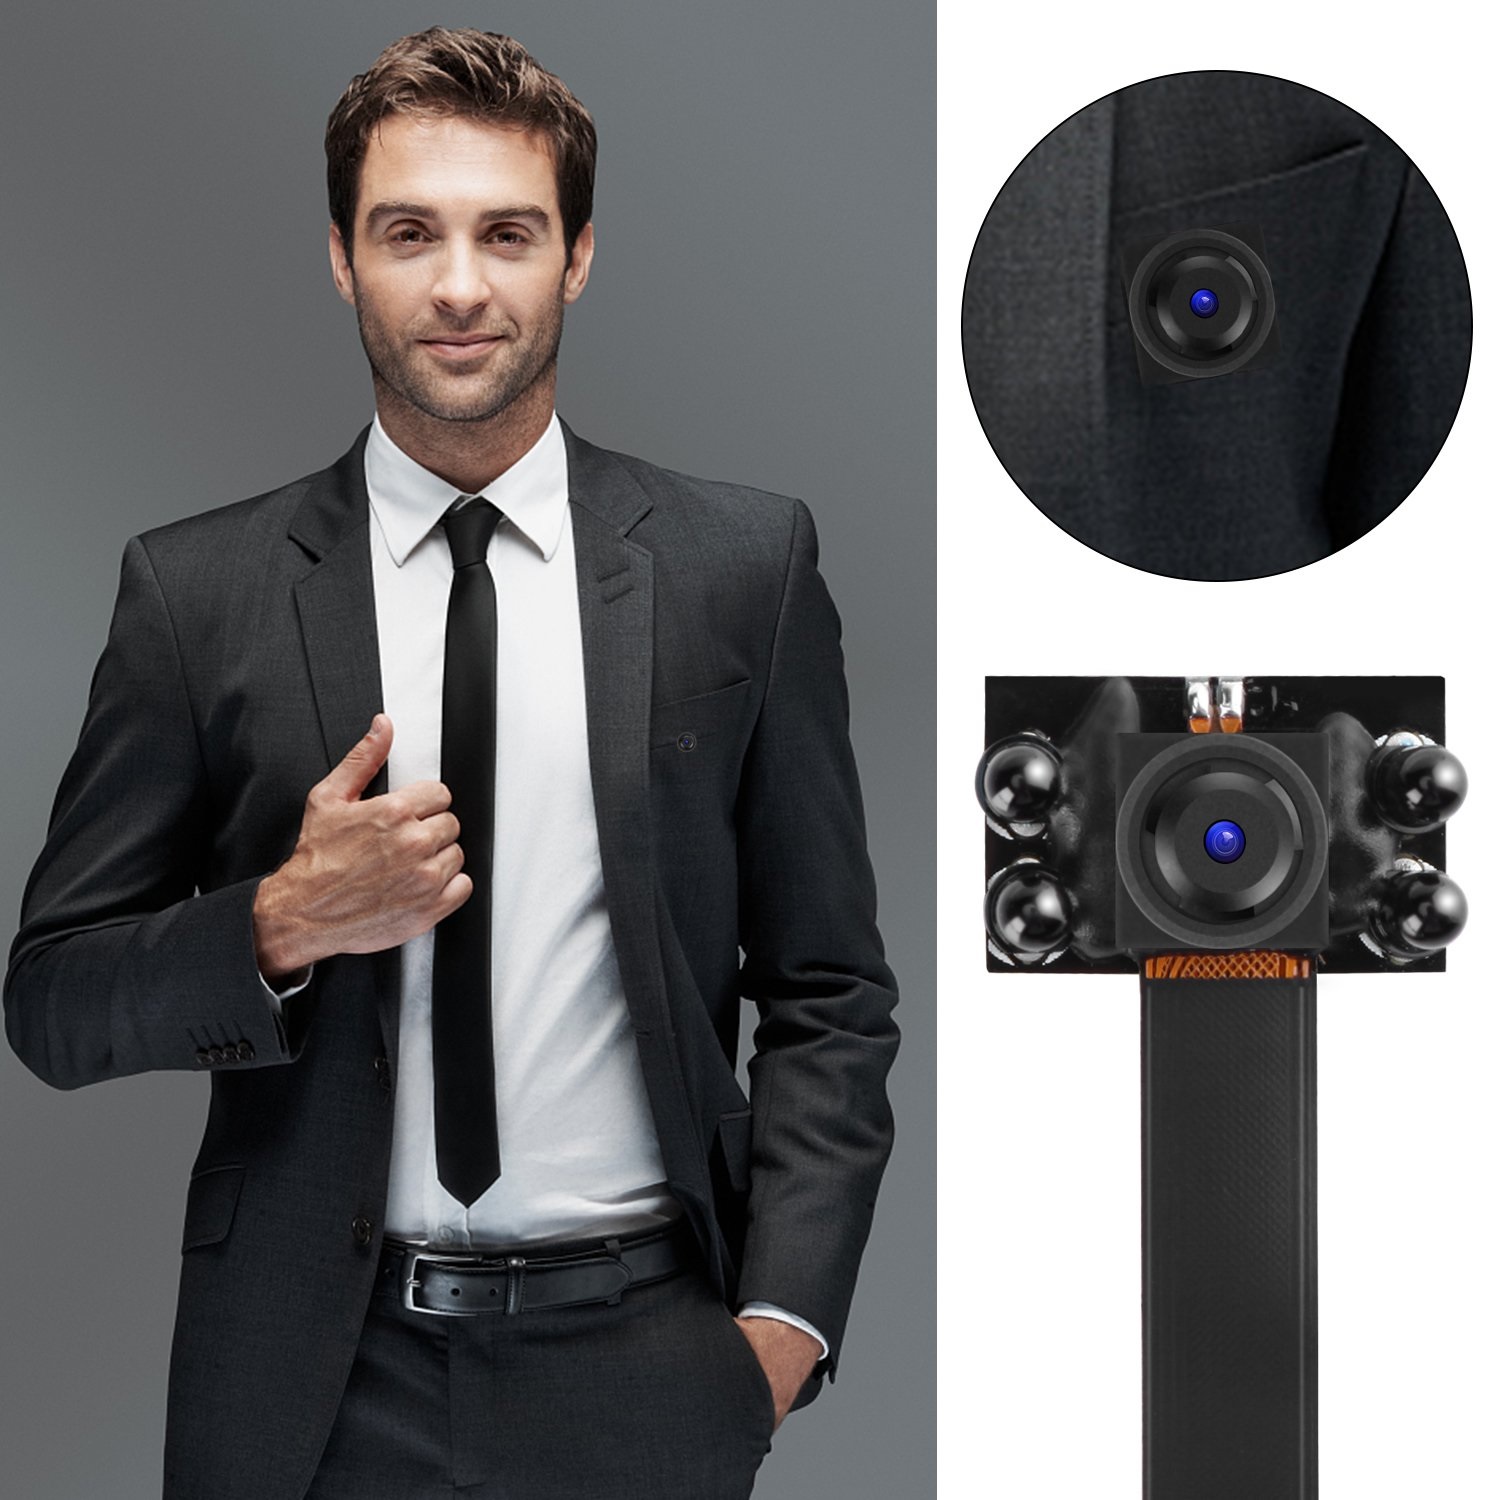 Camera V99-Pro 4 Mắt Hồng Ngoại Thế Hệ Mới, Camera Siêu Nhỏ, Camera Quan Sát Wifi V99 Xem Từ Xa Qua Điện Thoại , Dung Lượng Pin Lớn, Hỗ Trợ Thẻ Nhớ Lên Đến 64GB, Chất Lượng Hình Ảnh Sắc Nét Full HD Với Độ Phân Giải 1080p